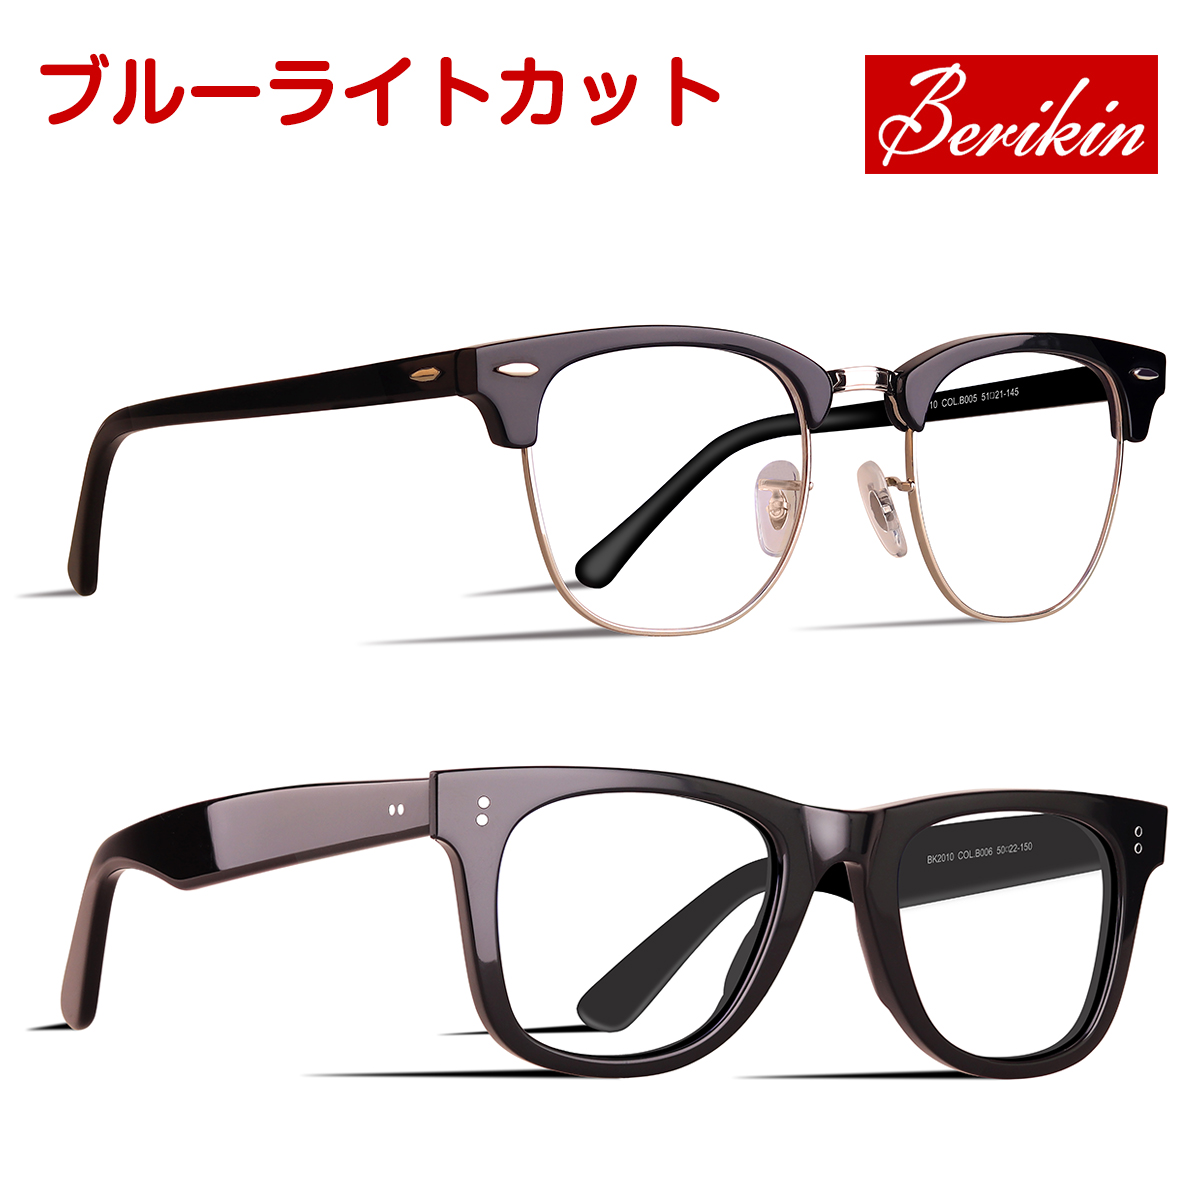 生まれのブランドで Berikin ブルーライトカットメガネ PC眼鏡 めがね ブロー サーモント ブラック クラシック レディース ユニセックス ウェリントン メンズ 格安SALEスタート